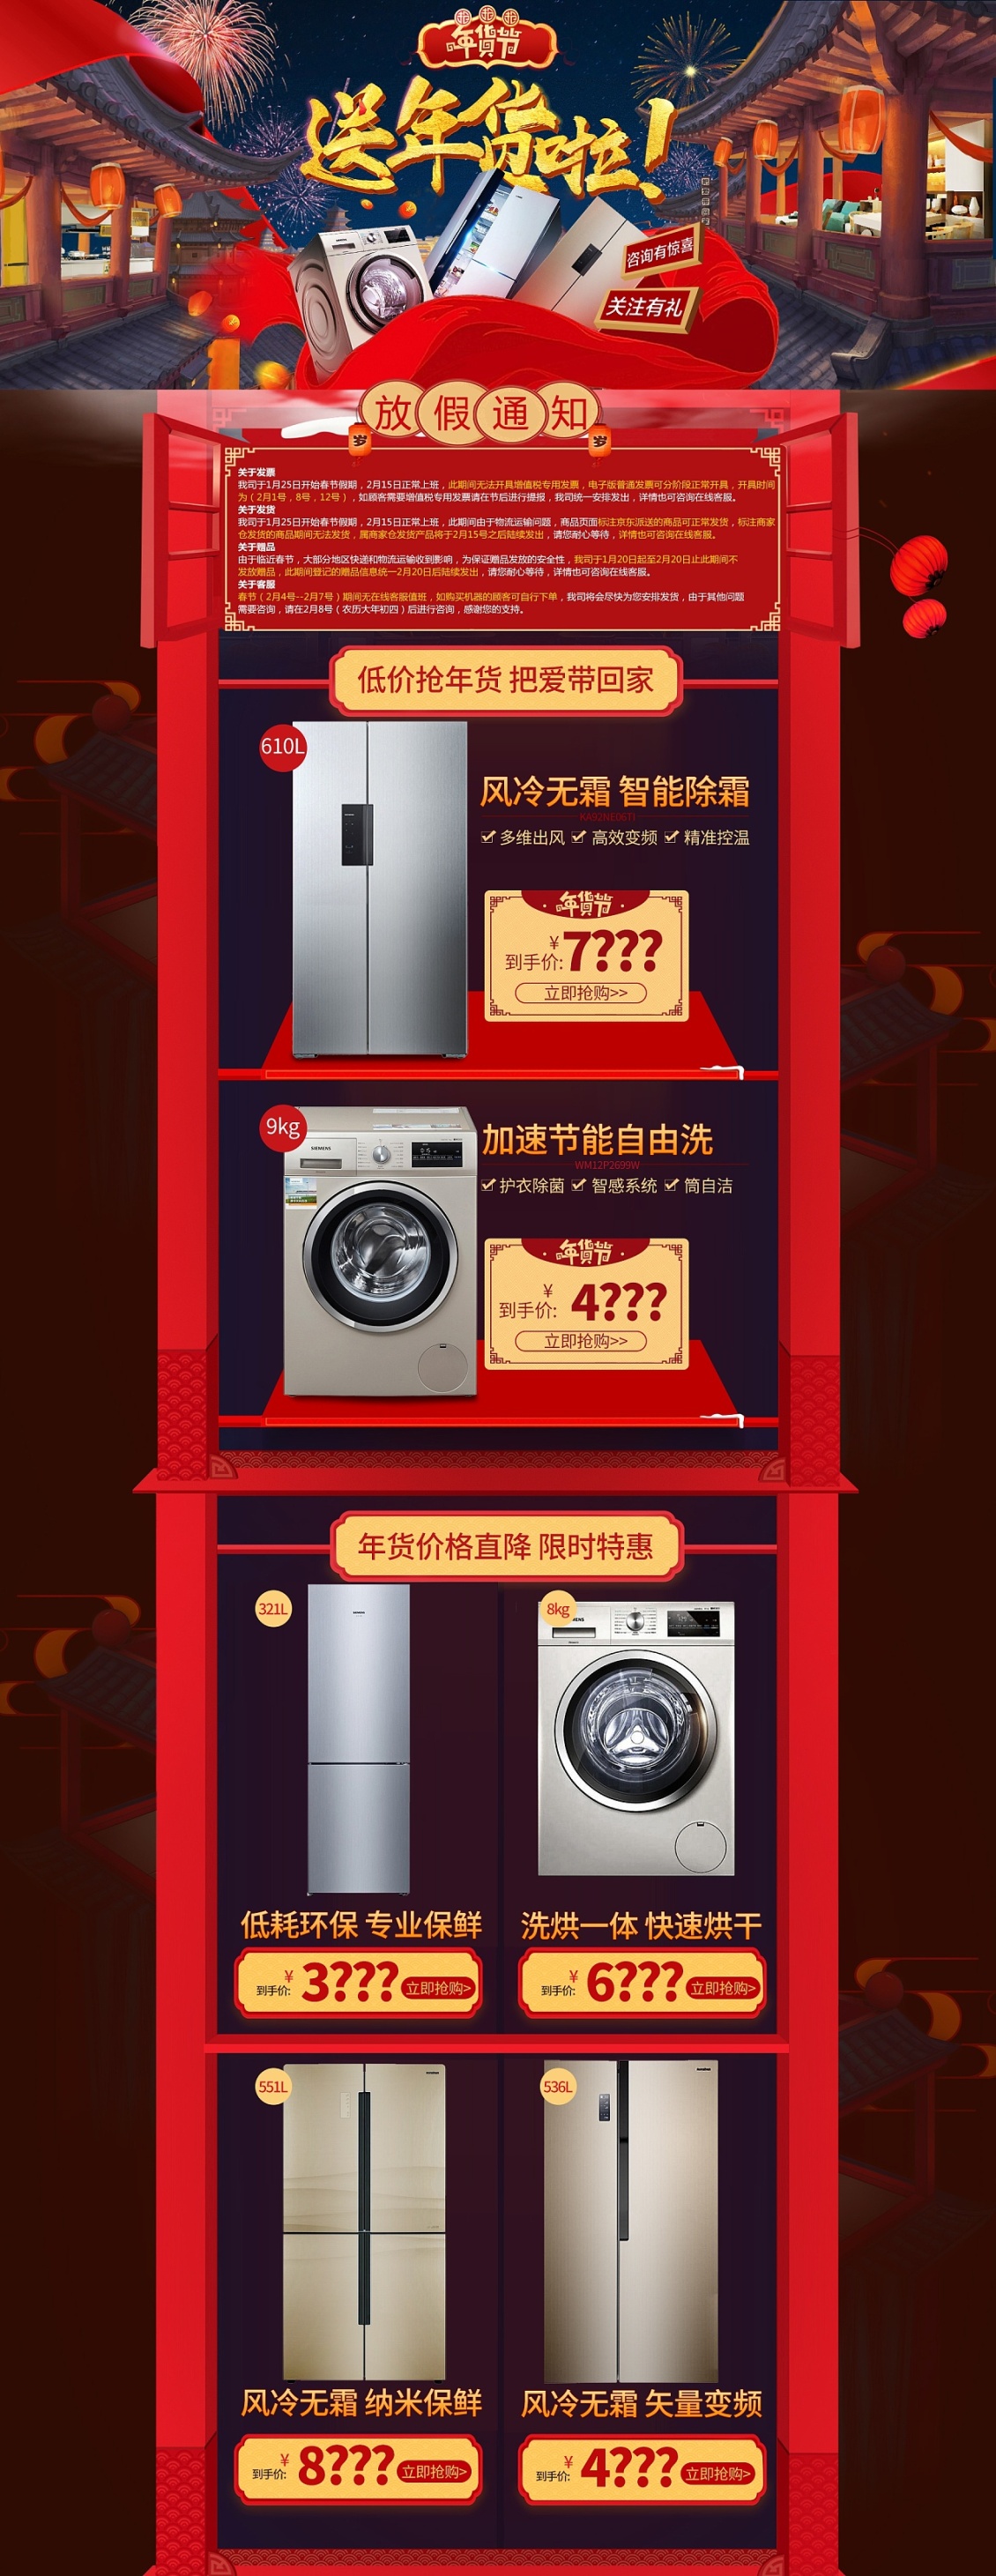 淘宝美工漠辰洗衣机促销活动中国风作品